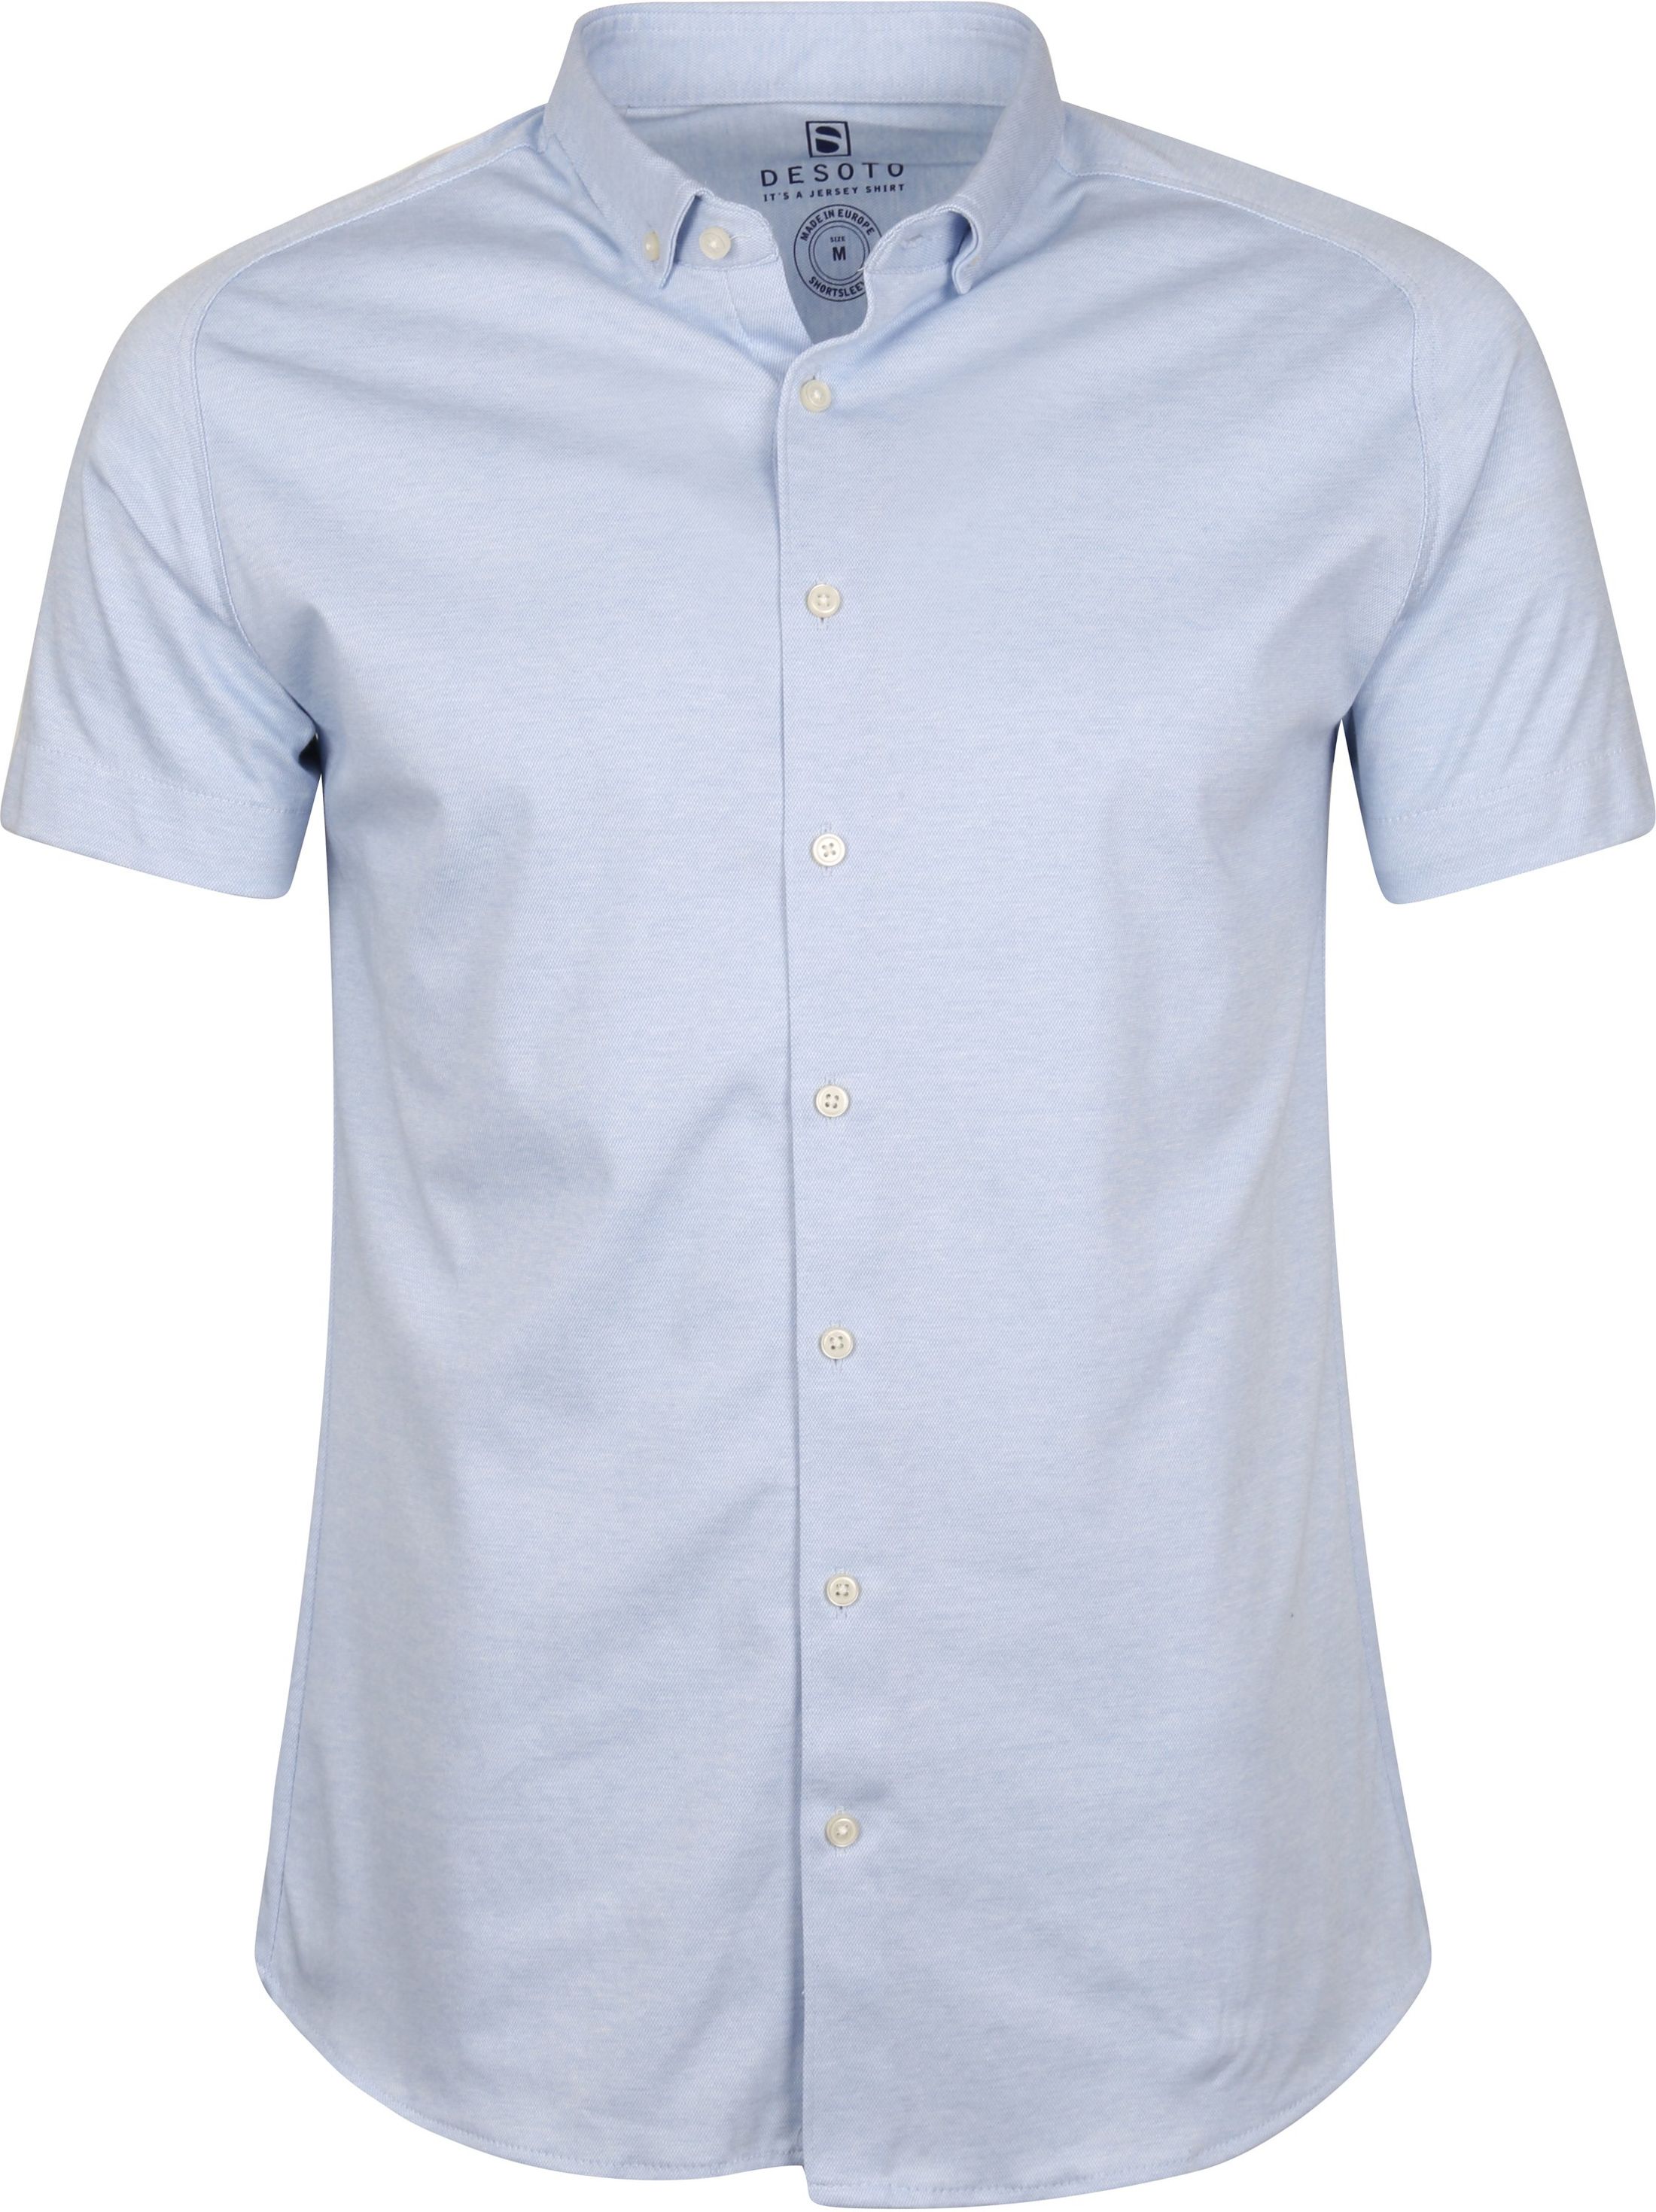 Desoto Modern BD Shirt Light Blue size 3XL